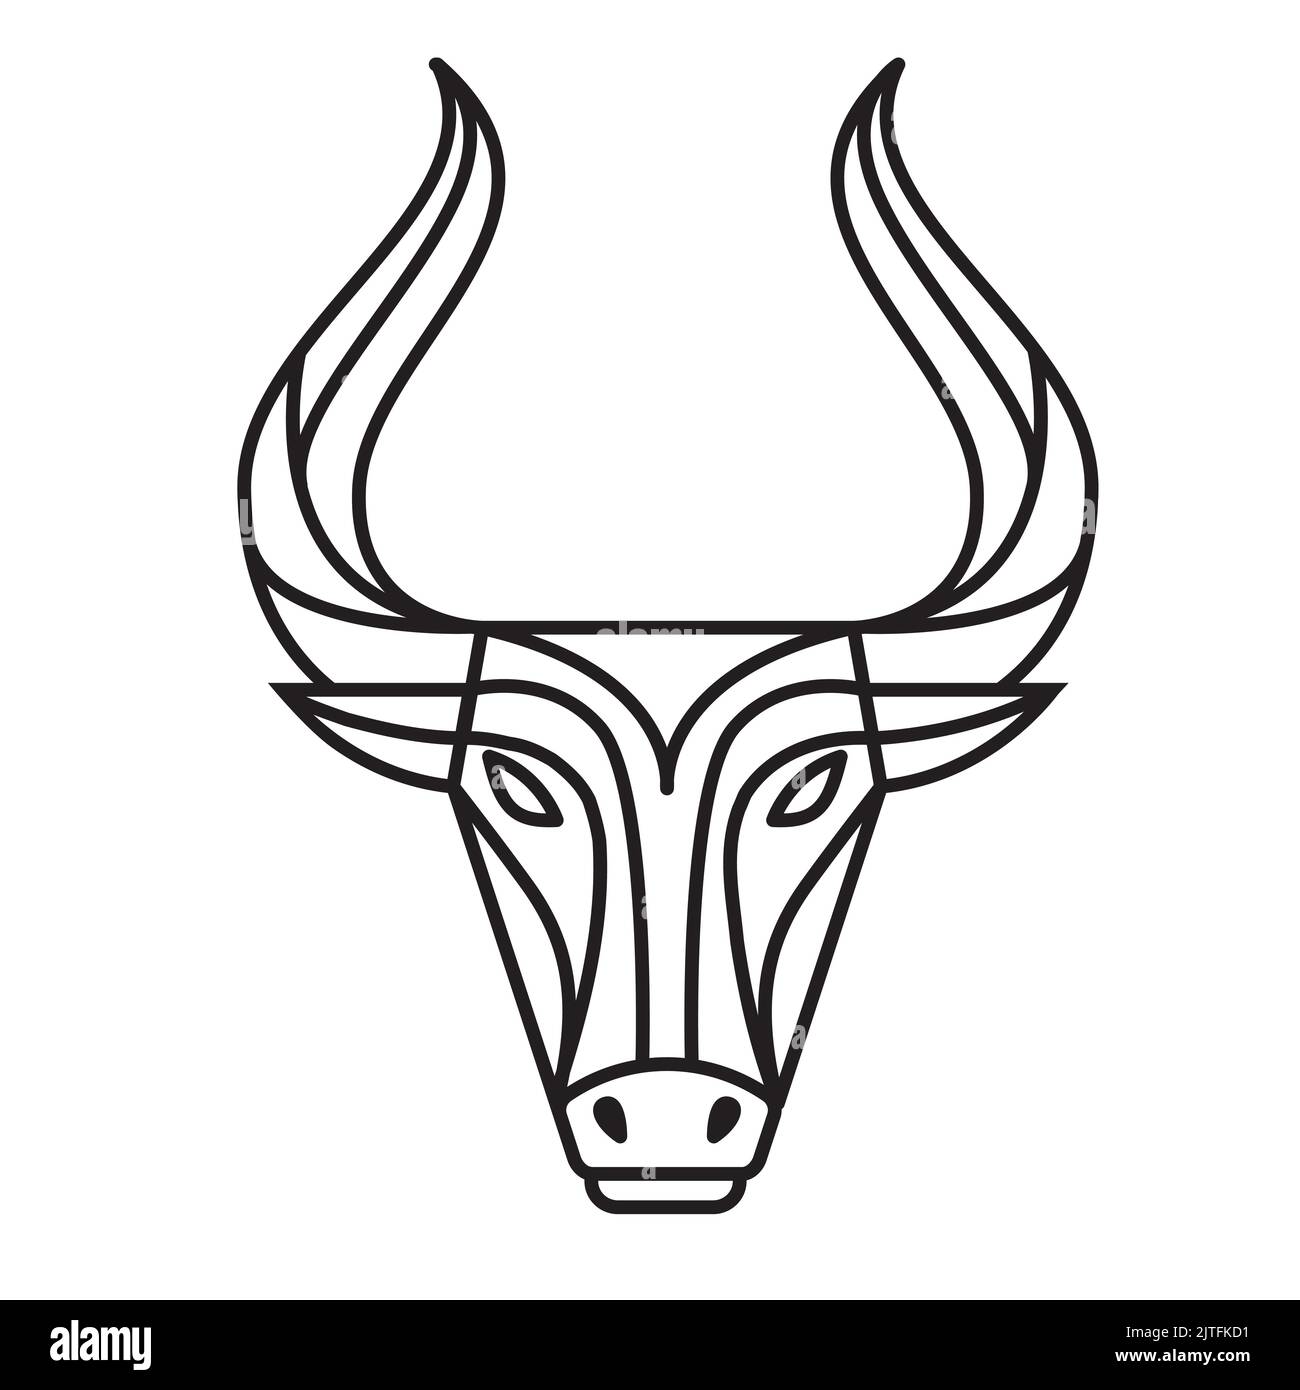 Bullhead-Logo in linearer Umrandung isoliert auf weißem Hintergrund. Vektorgrafik Illustration von Stier, Ochse oder Büffel Stock Vektor